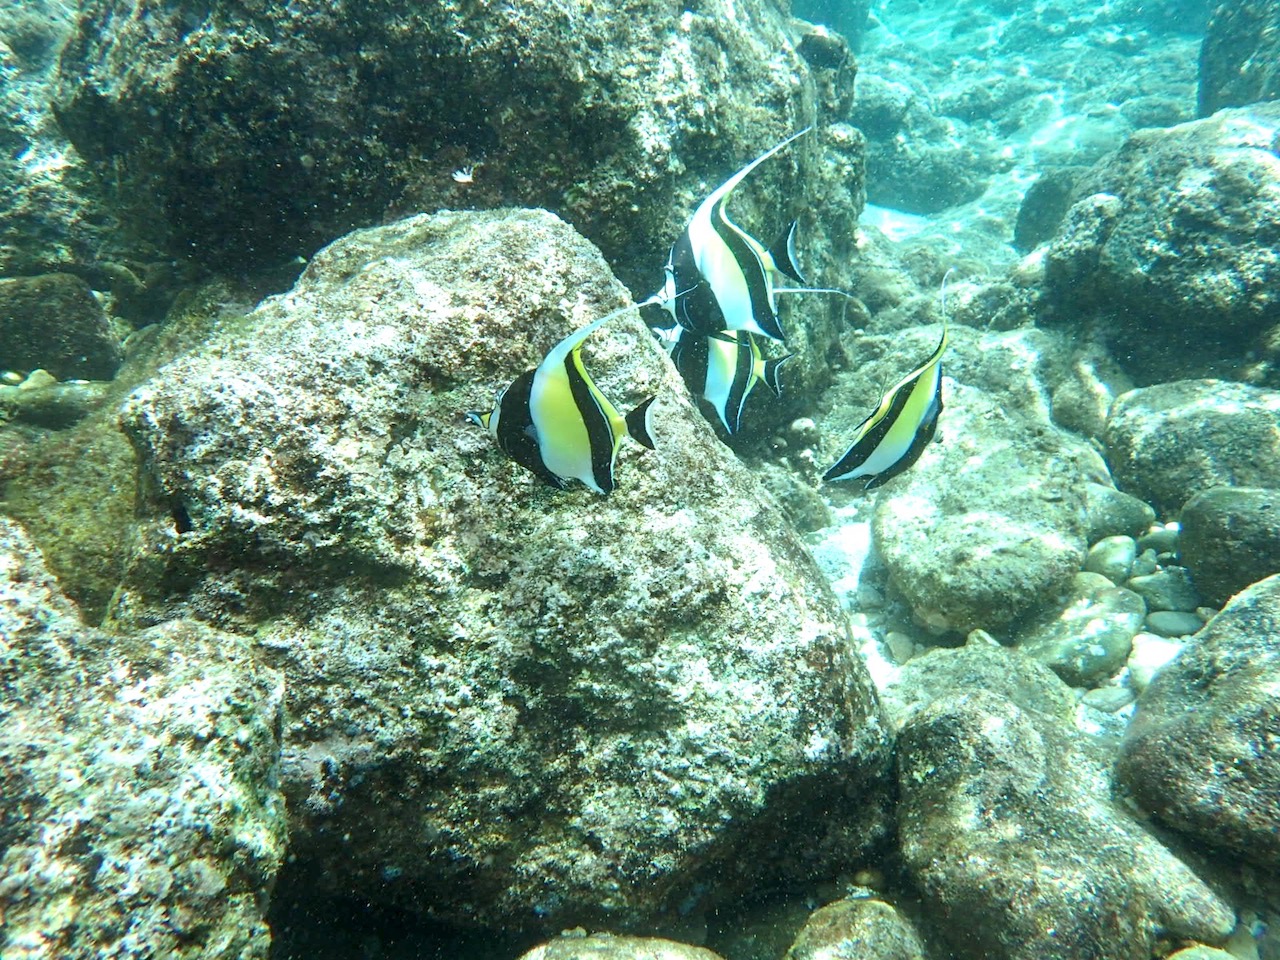 Snorkeling at Shark's Cove - Fish